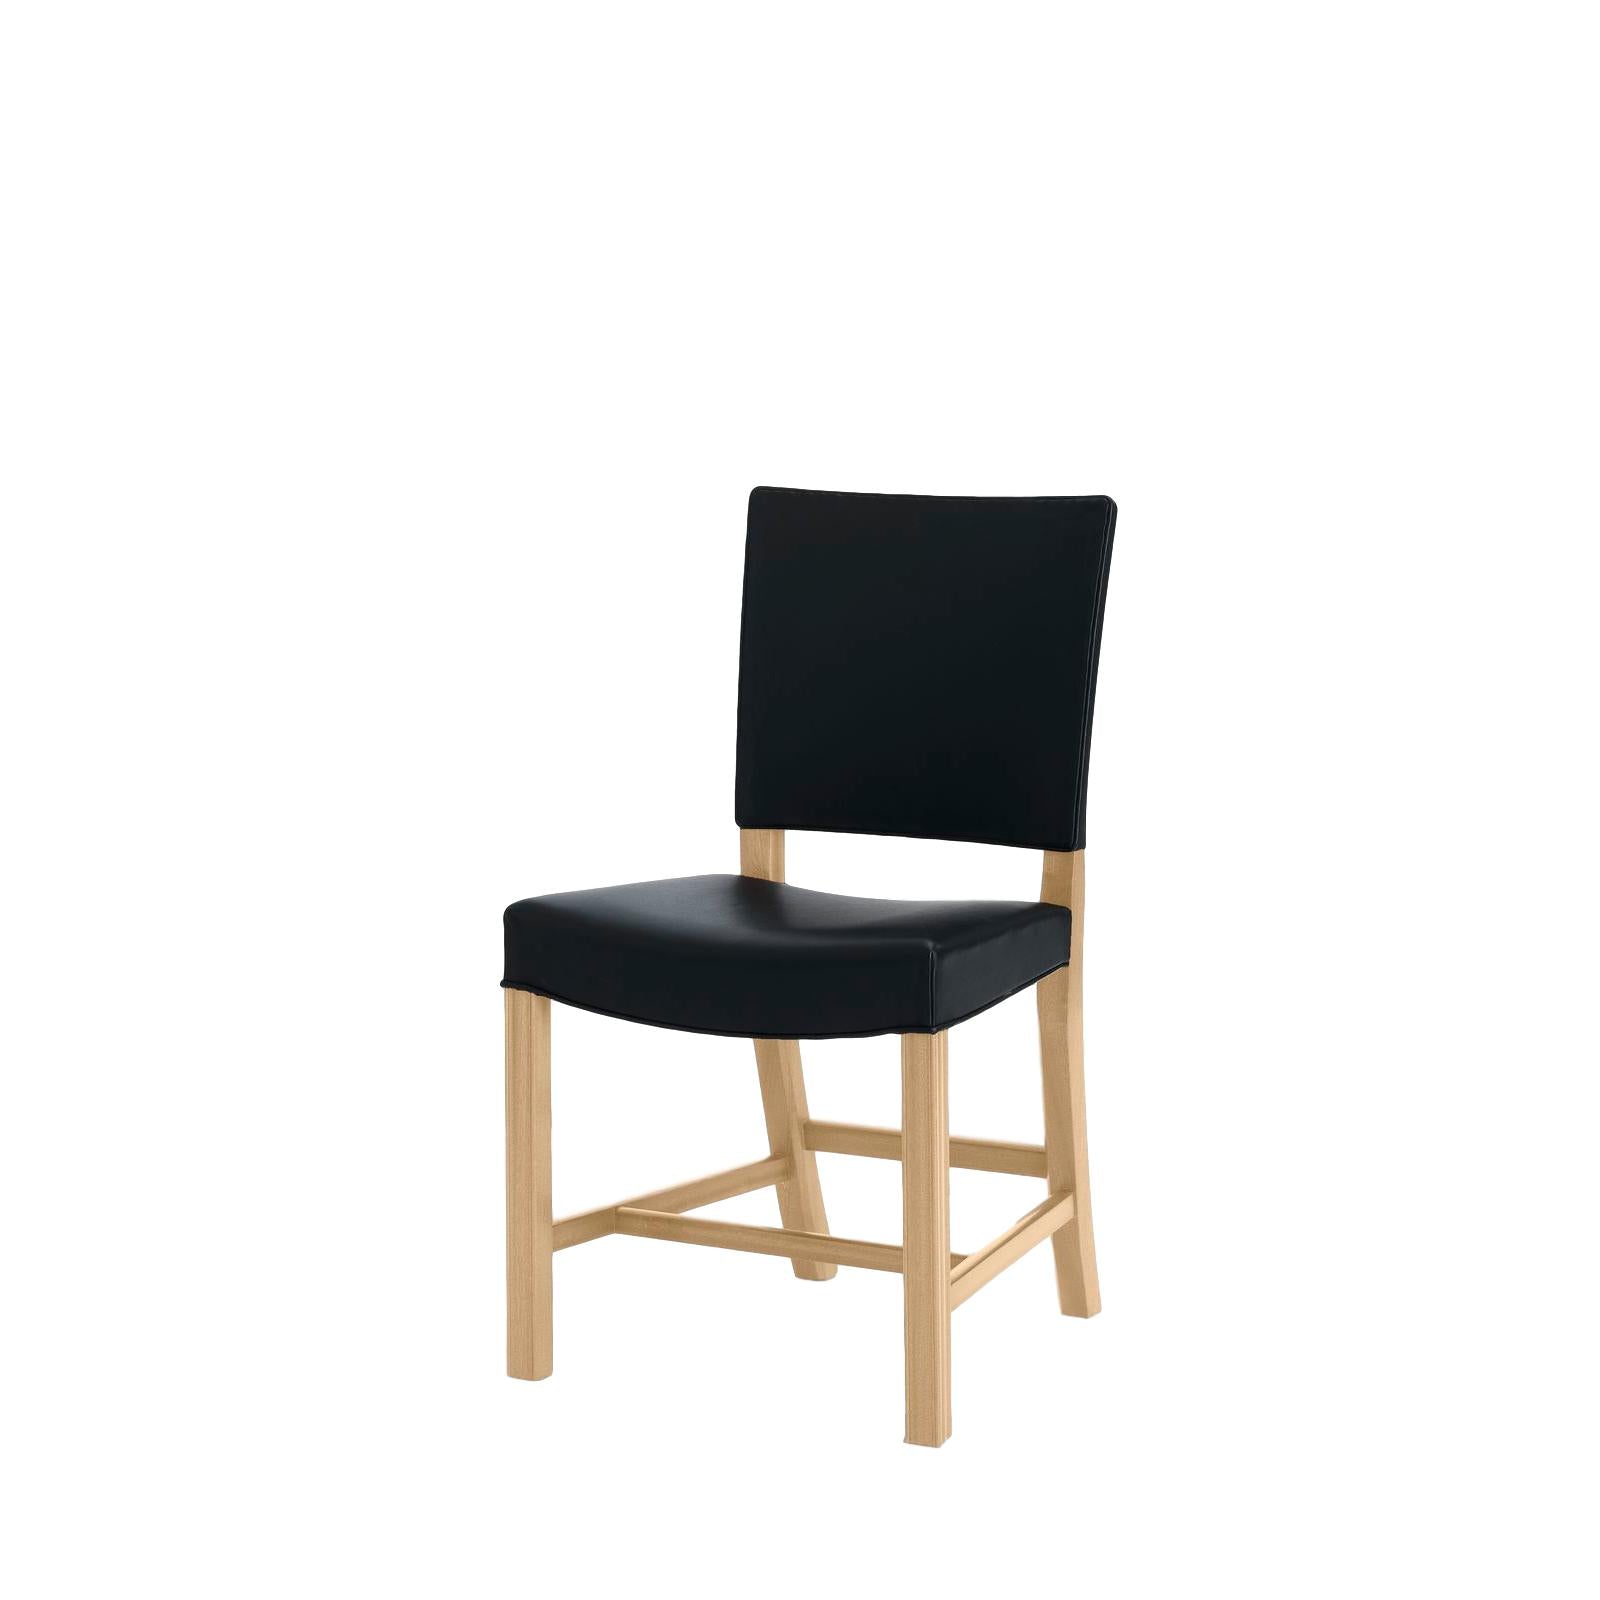 Carl Hansen KK37580 großer roter Stuhl, Soaped Eiche/schwarzes Leder